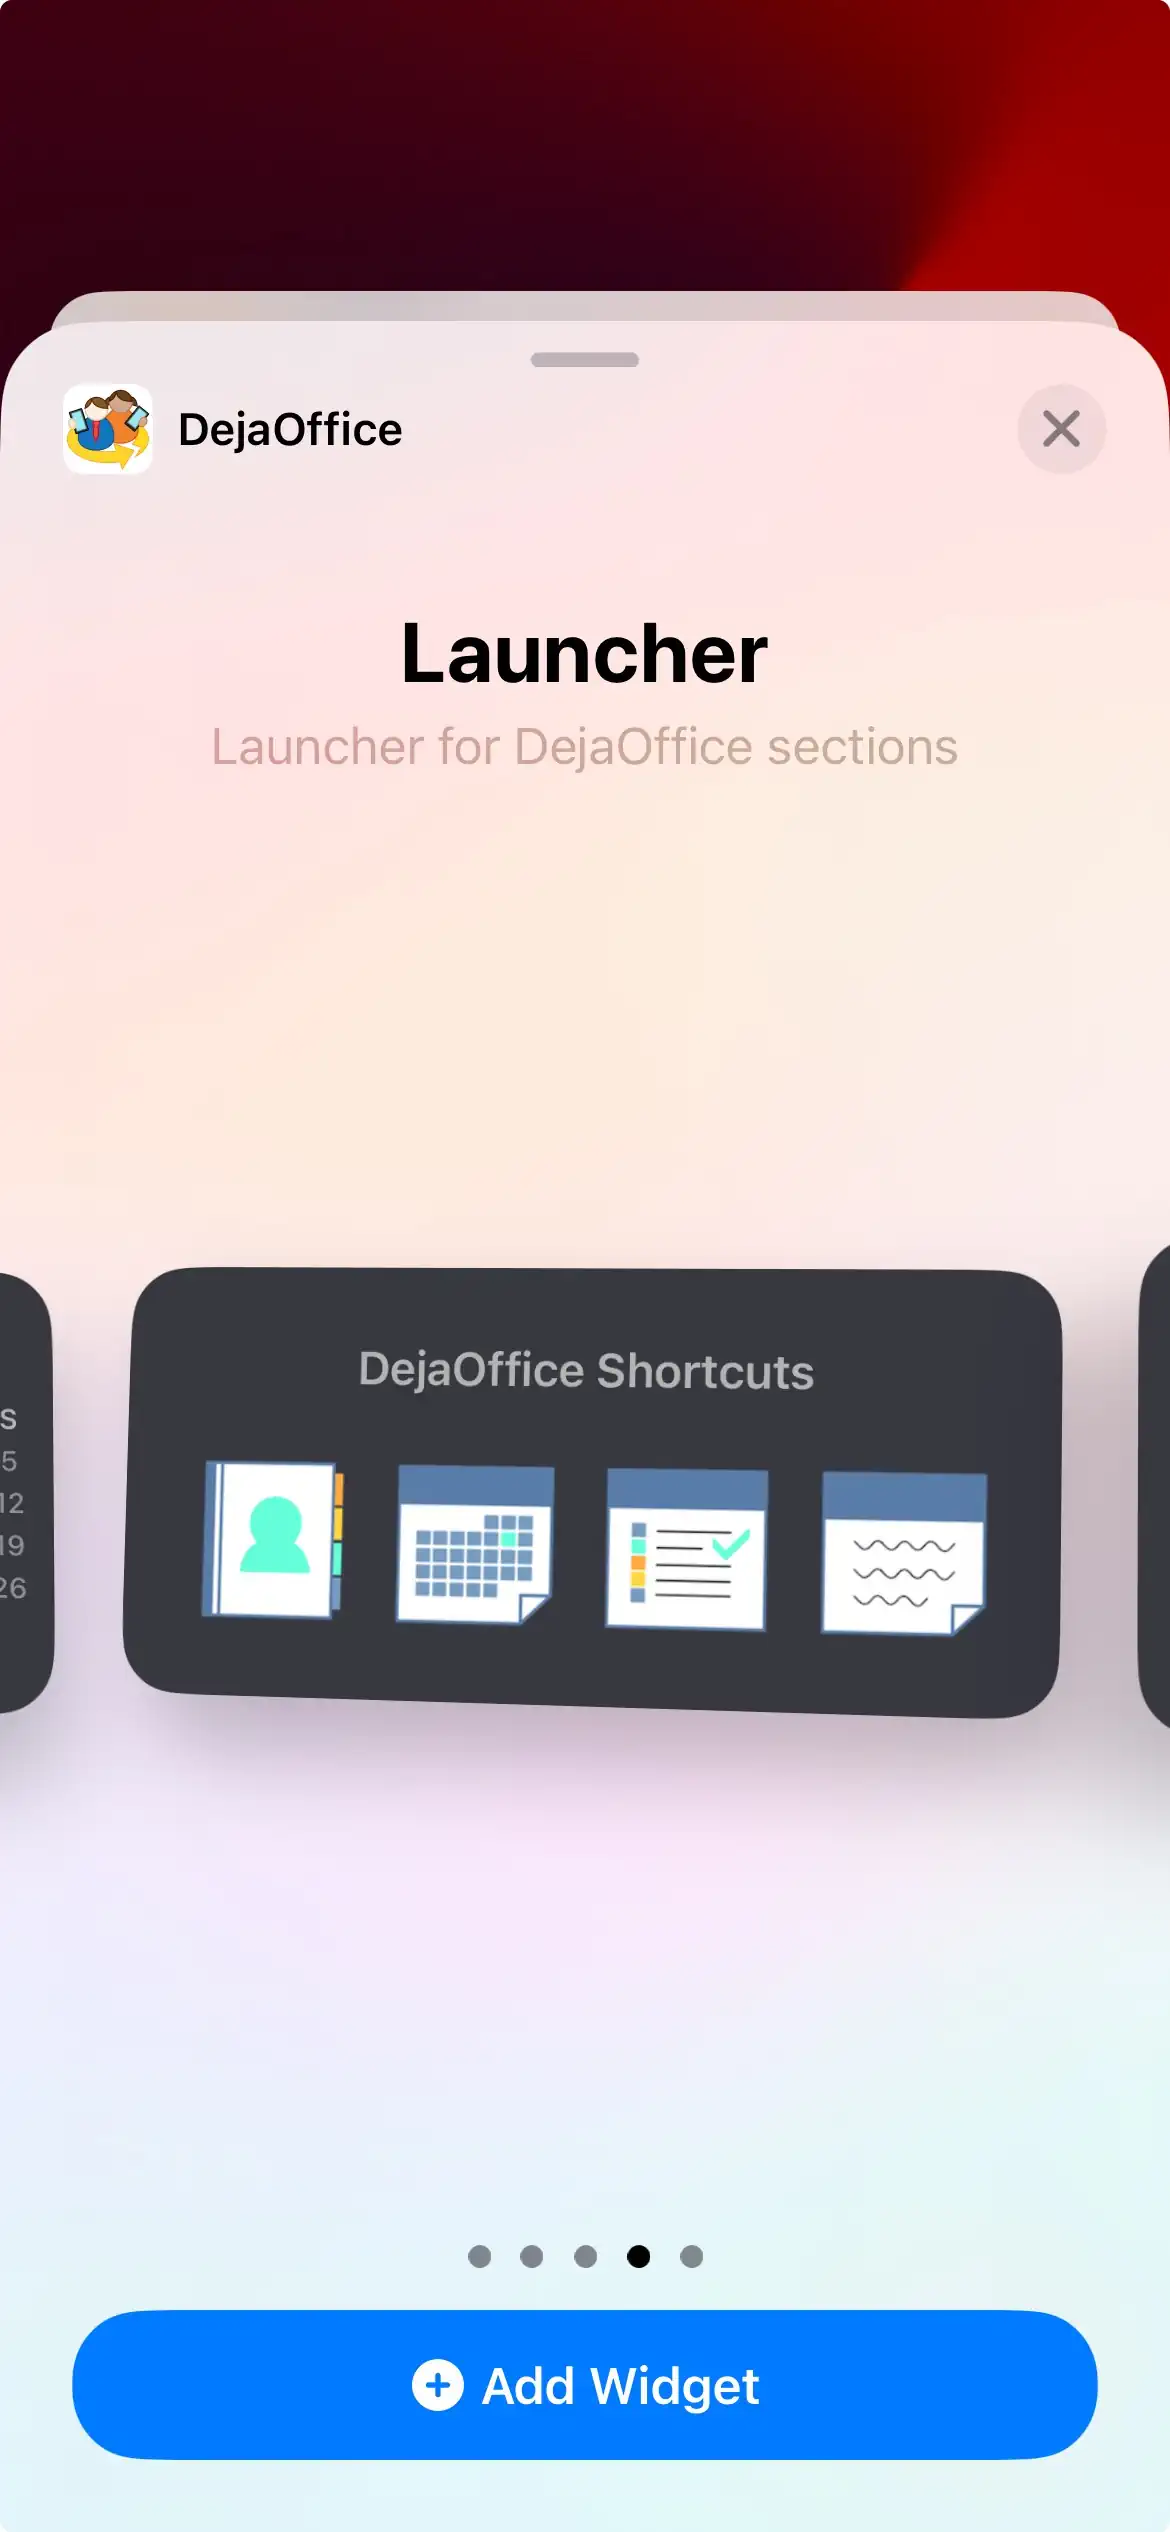 DejaOffice Shortcuts